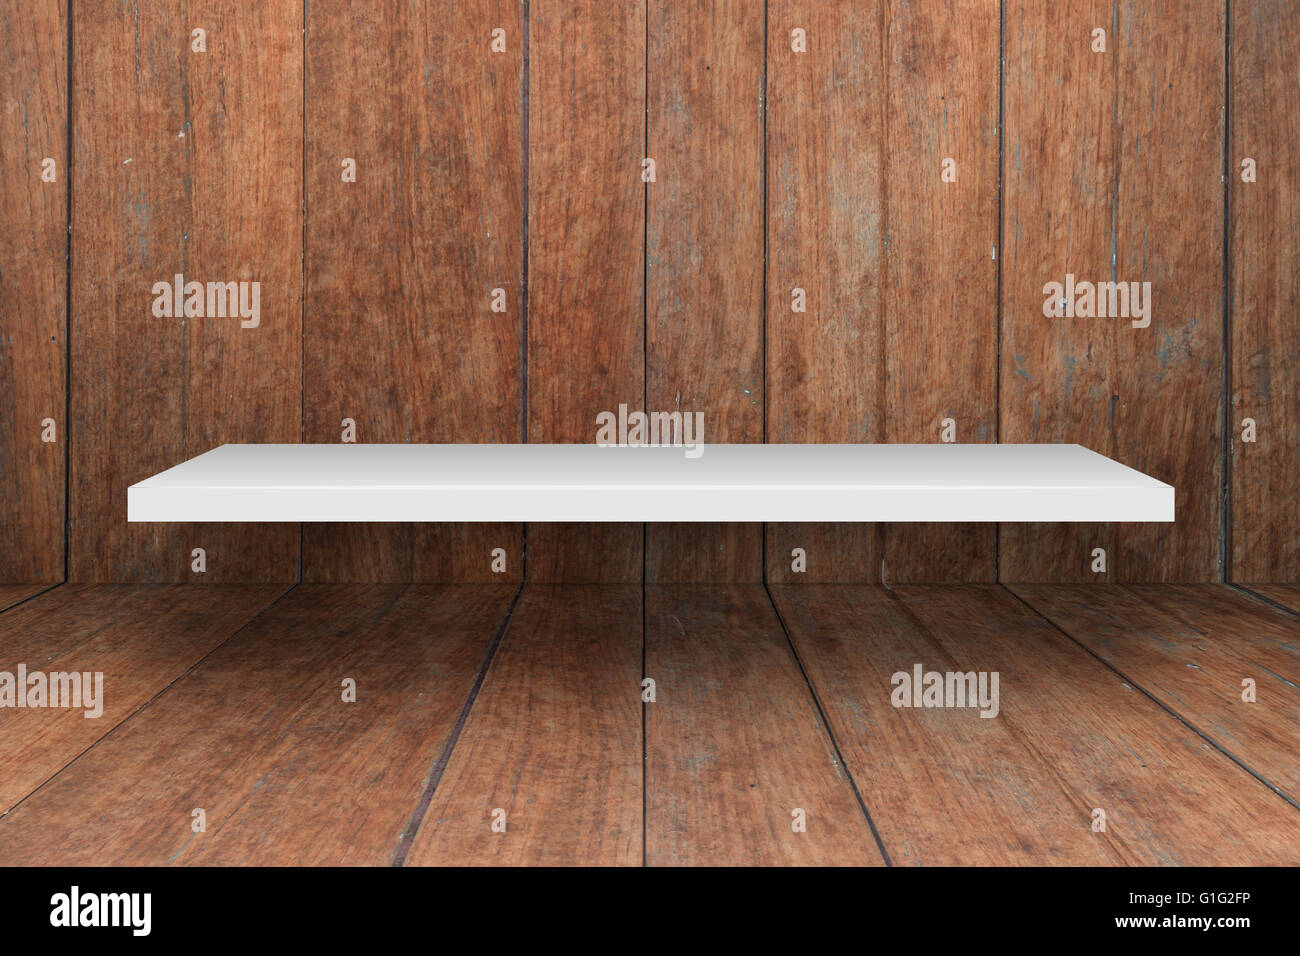 White shelf on wooden interior texture background, stock photo Stock Photo